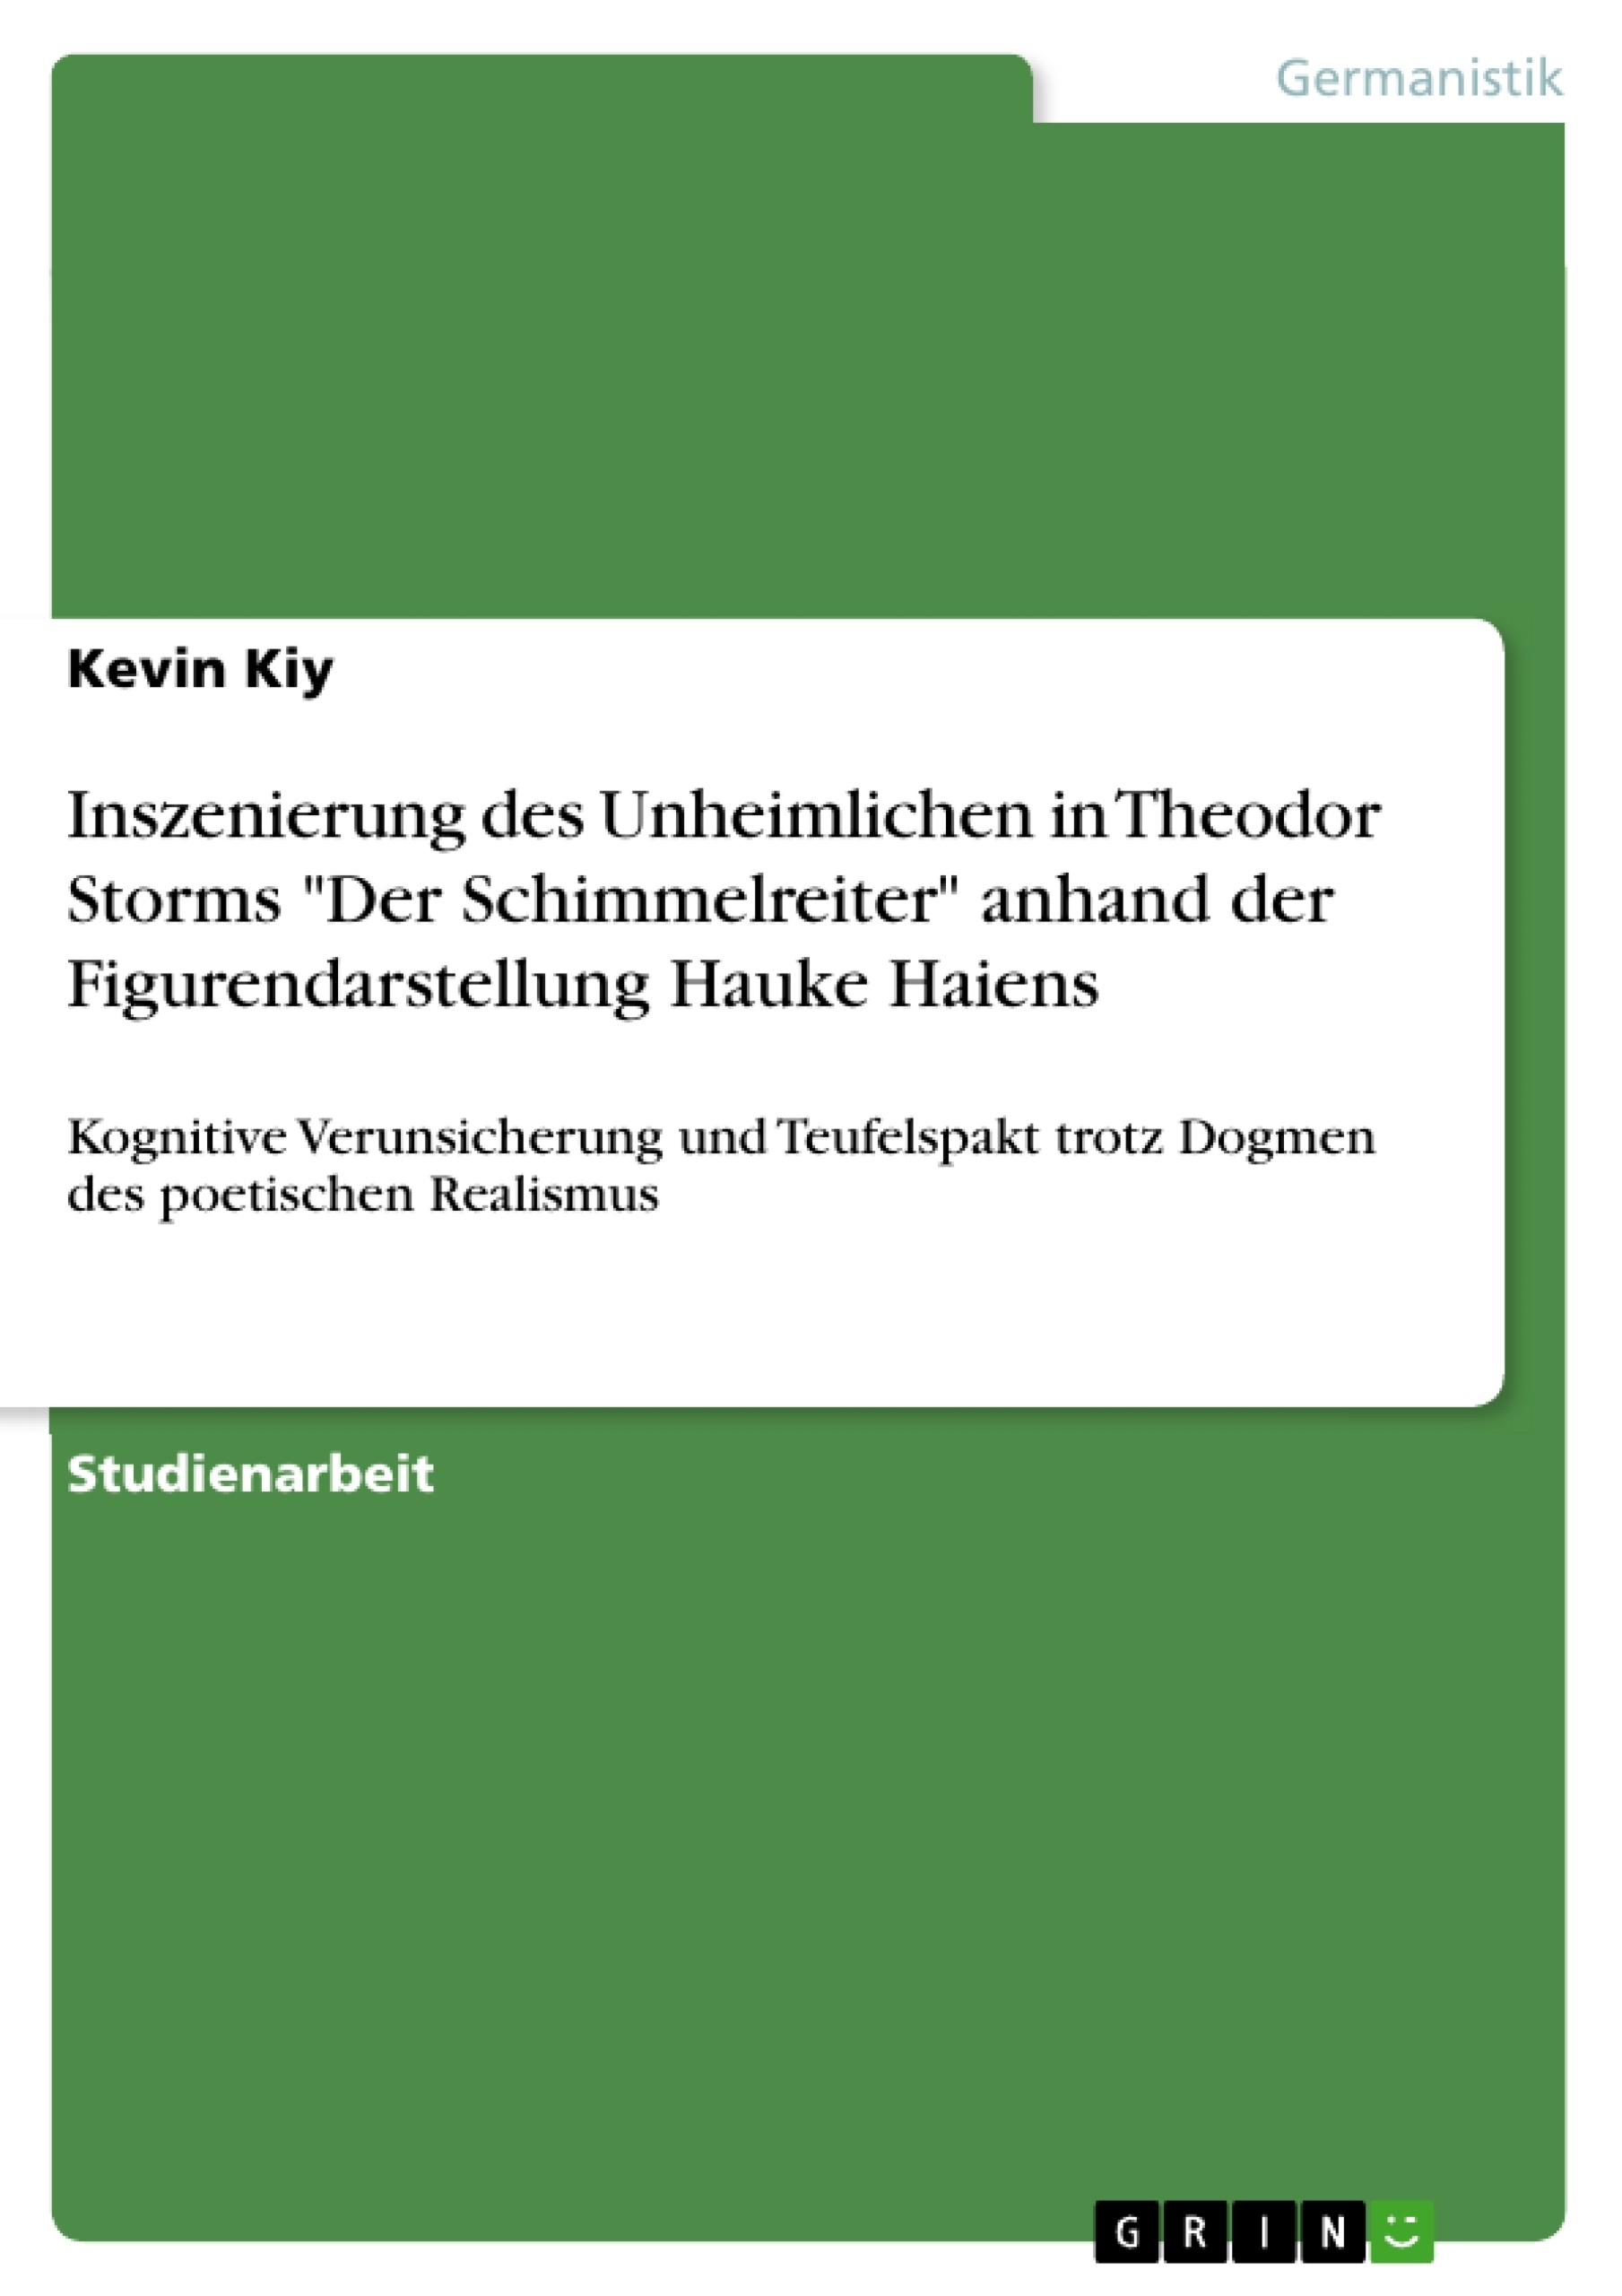 Title: Inszenierung des Unheimlichen in Theodor Storms "Der Schimmelreiter" anhand der Figurendarstellung Hauke Haiens